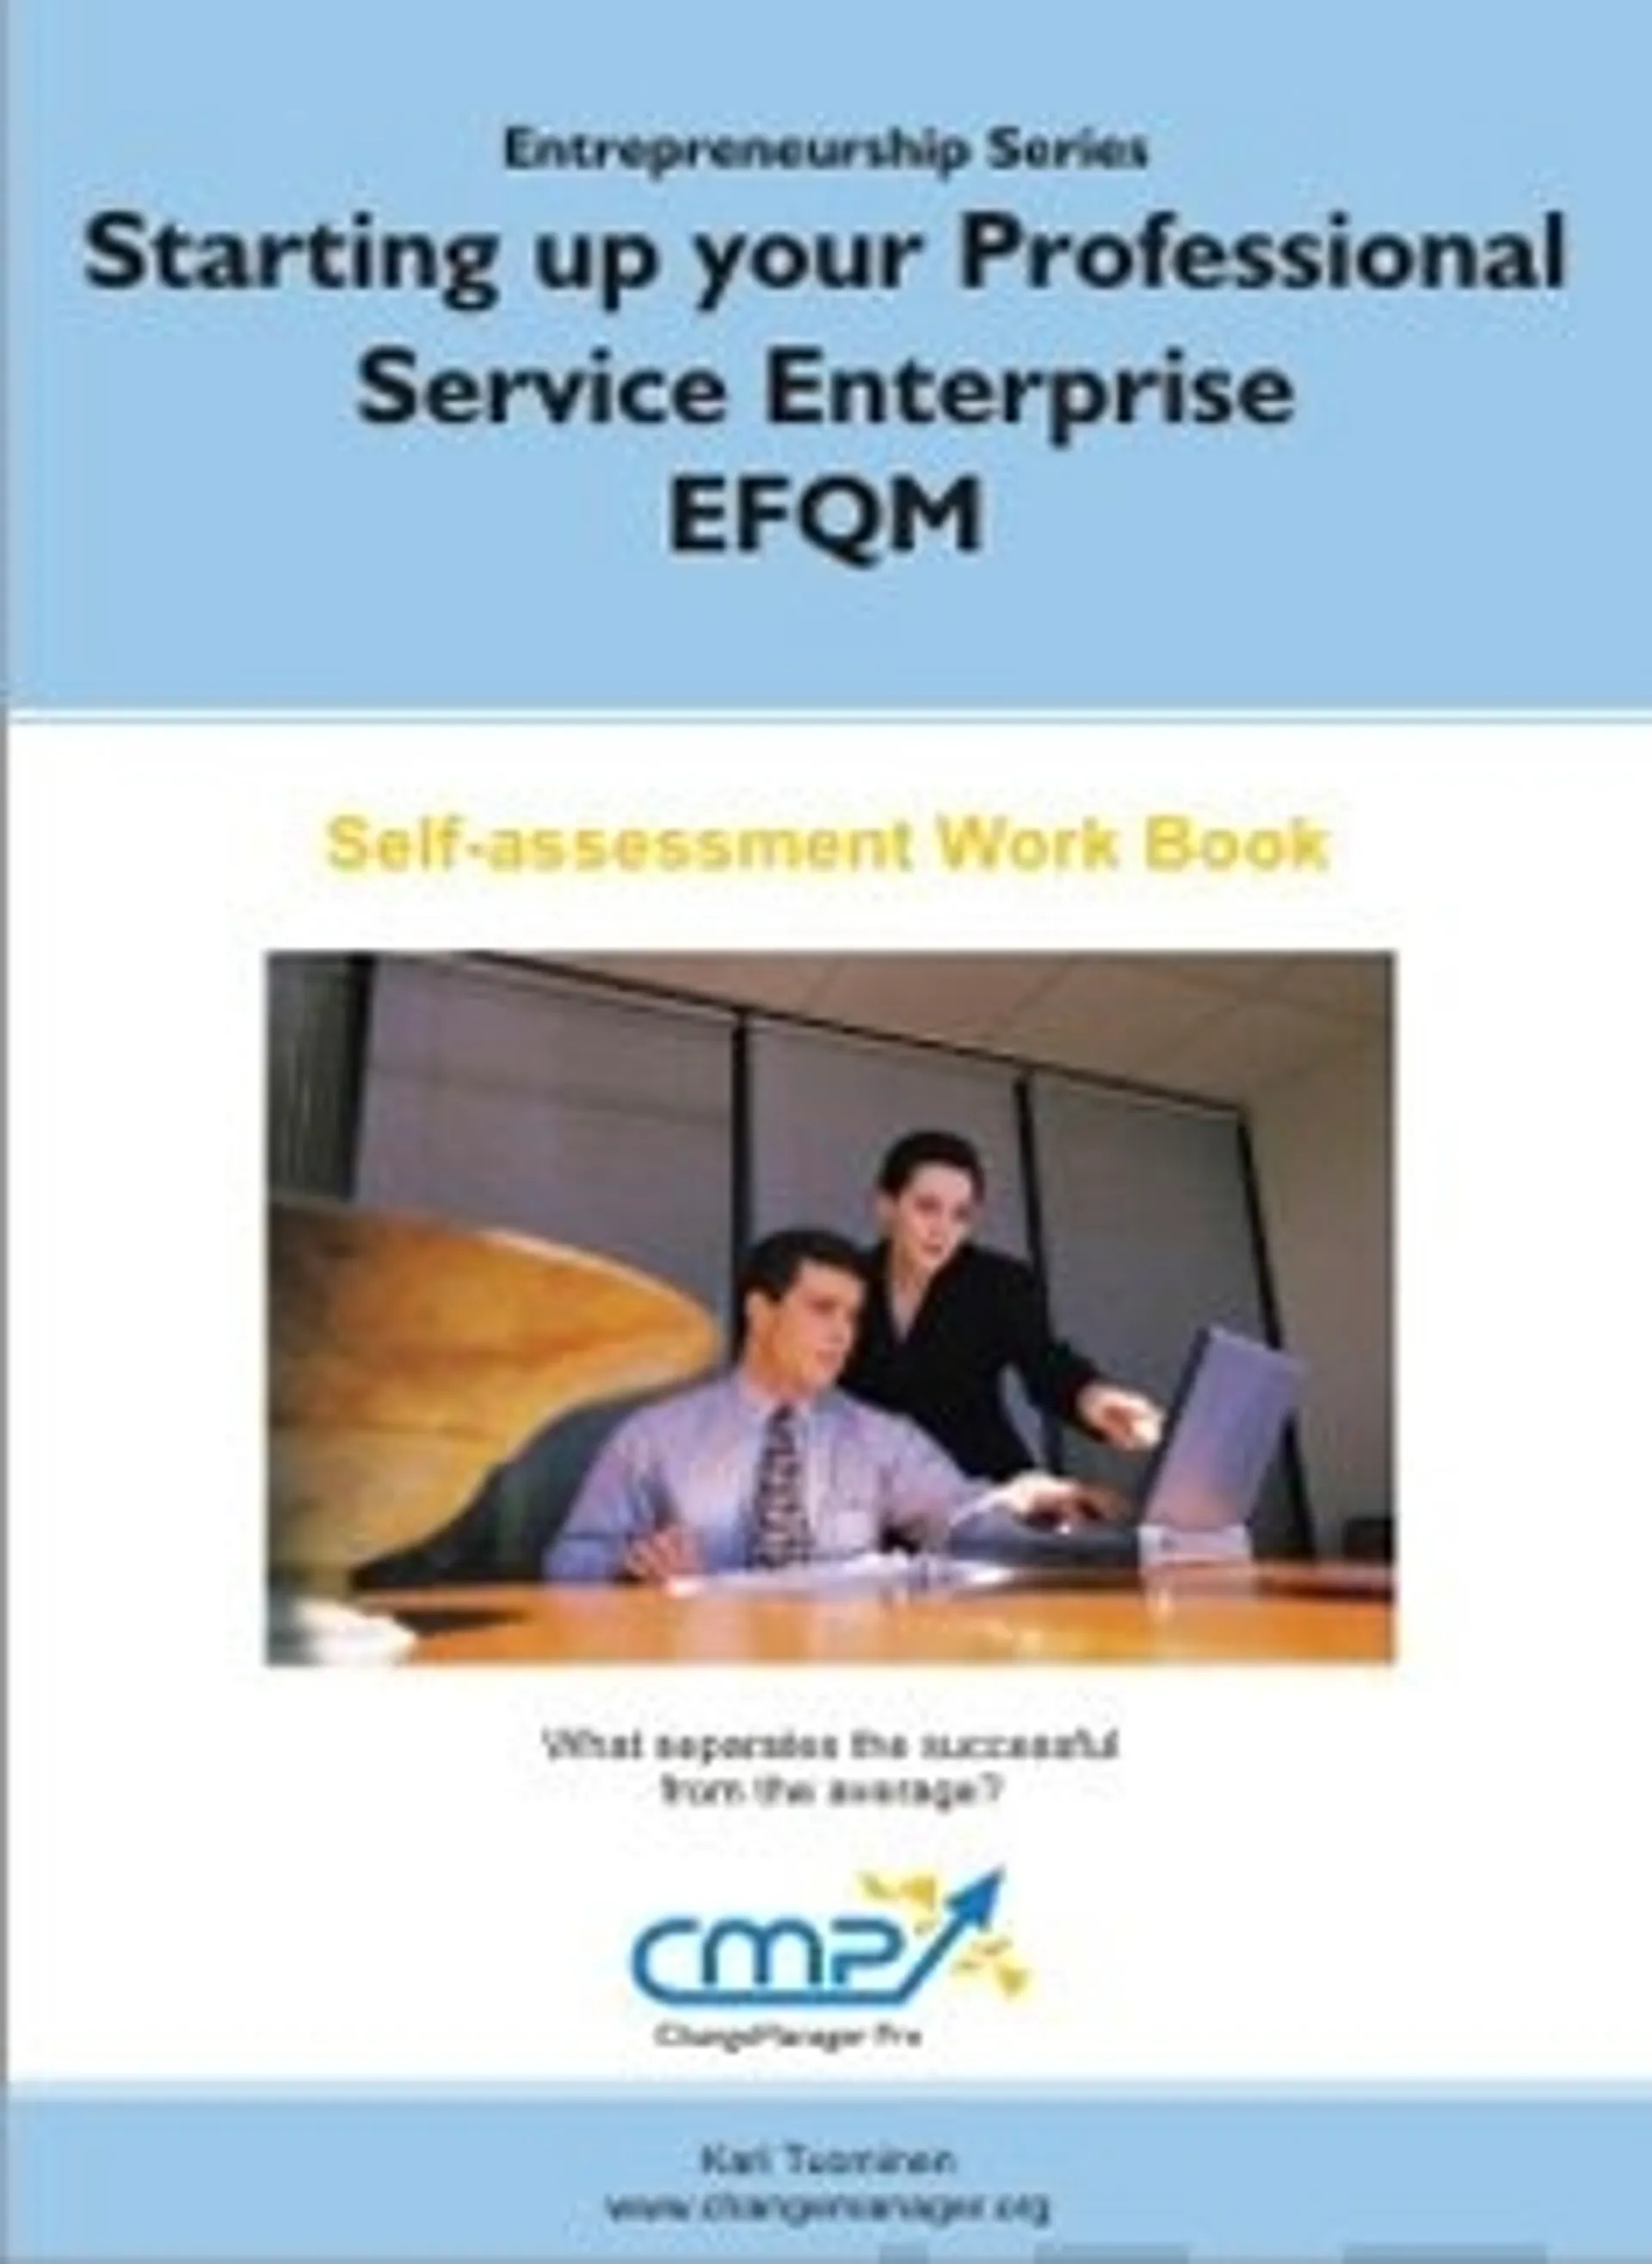 Starting up Your Professional Service Enterprise - EFQM 2010